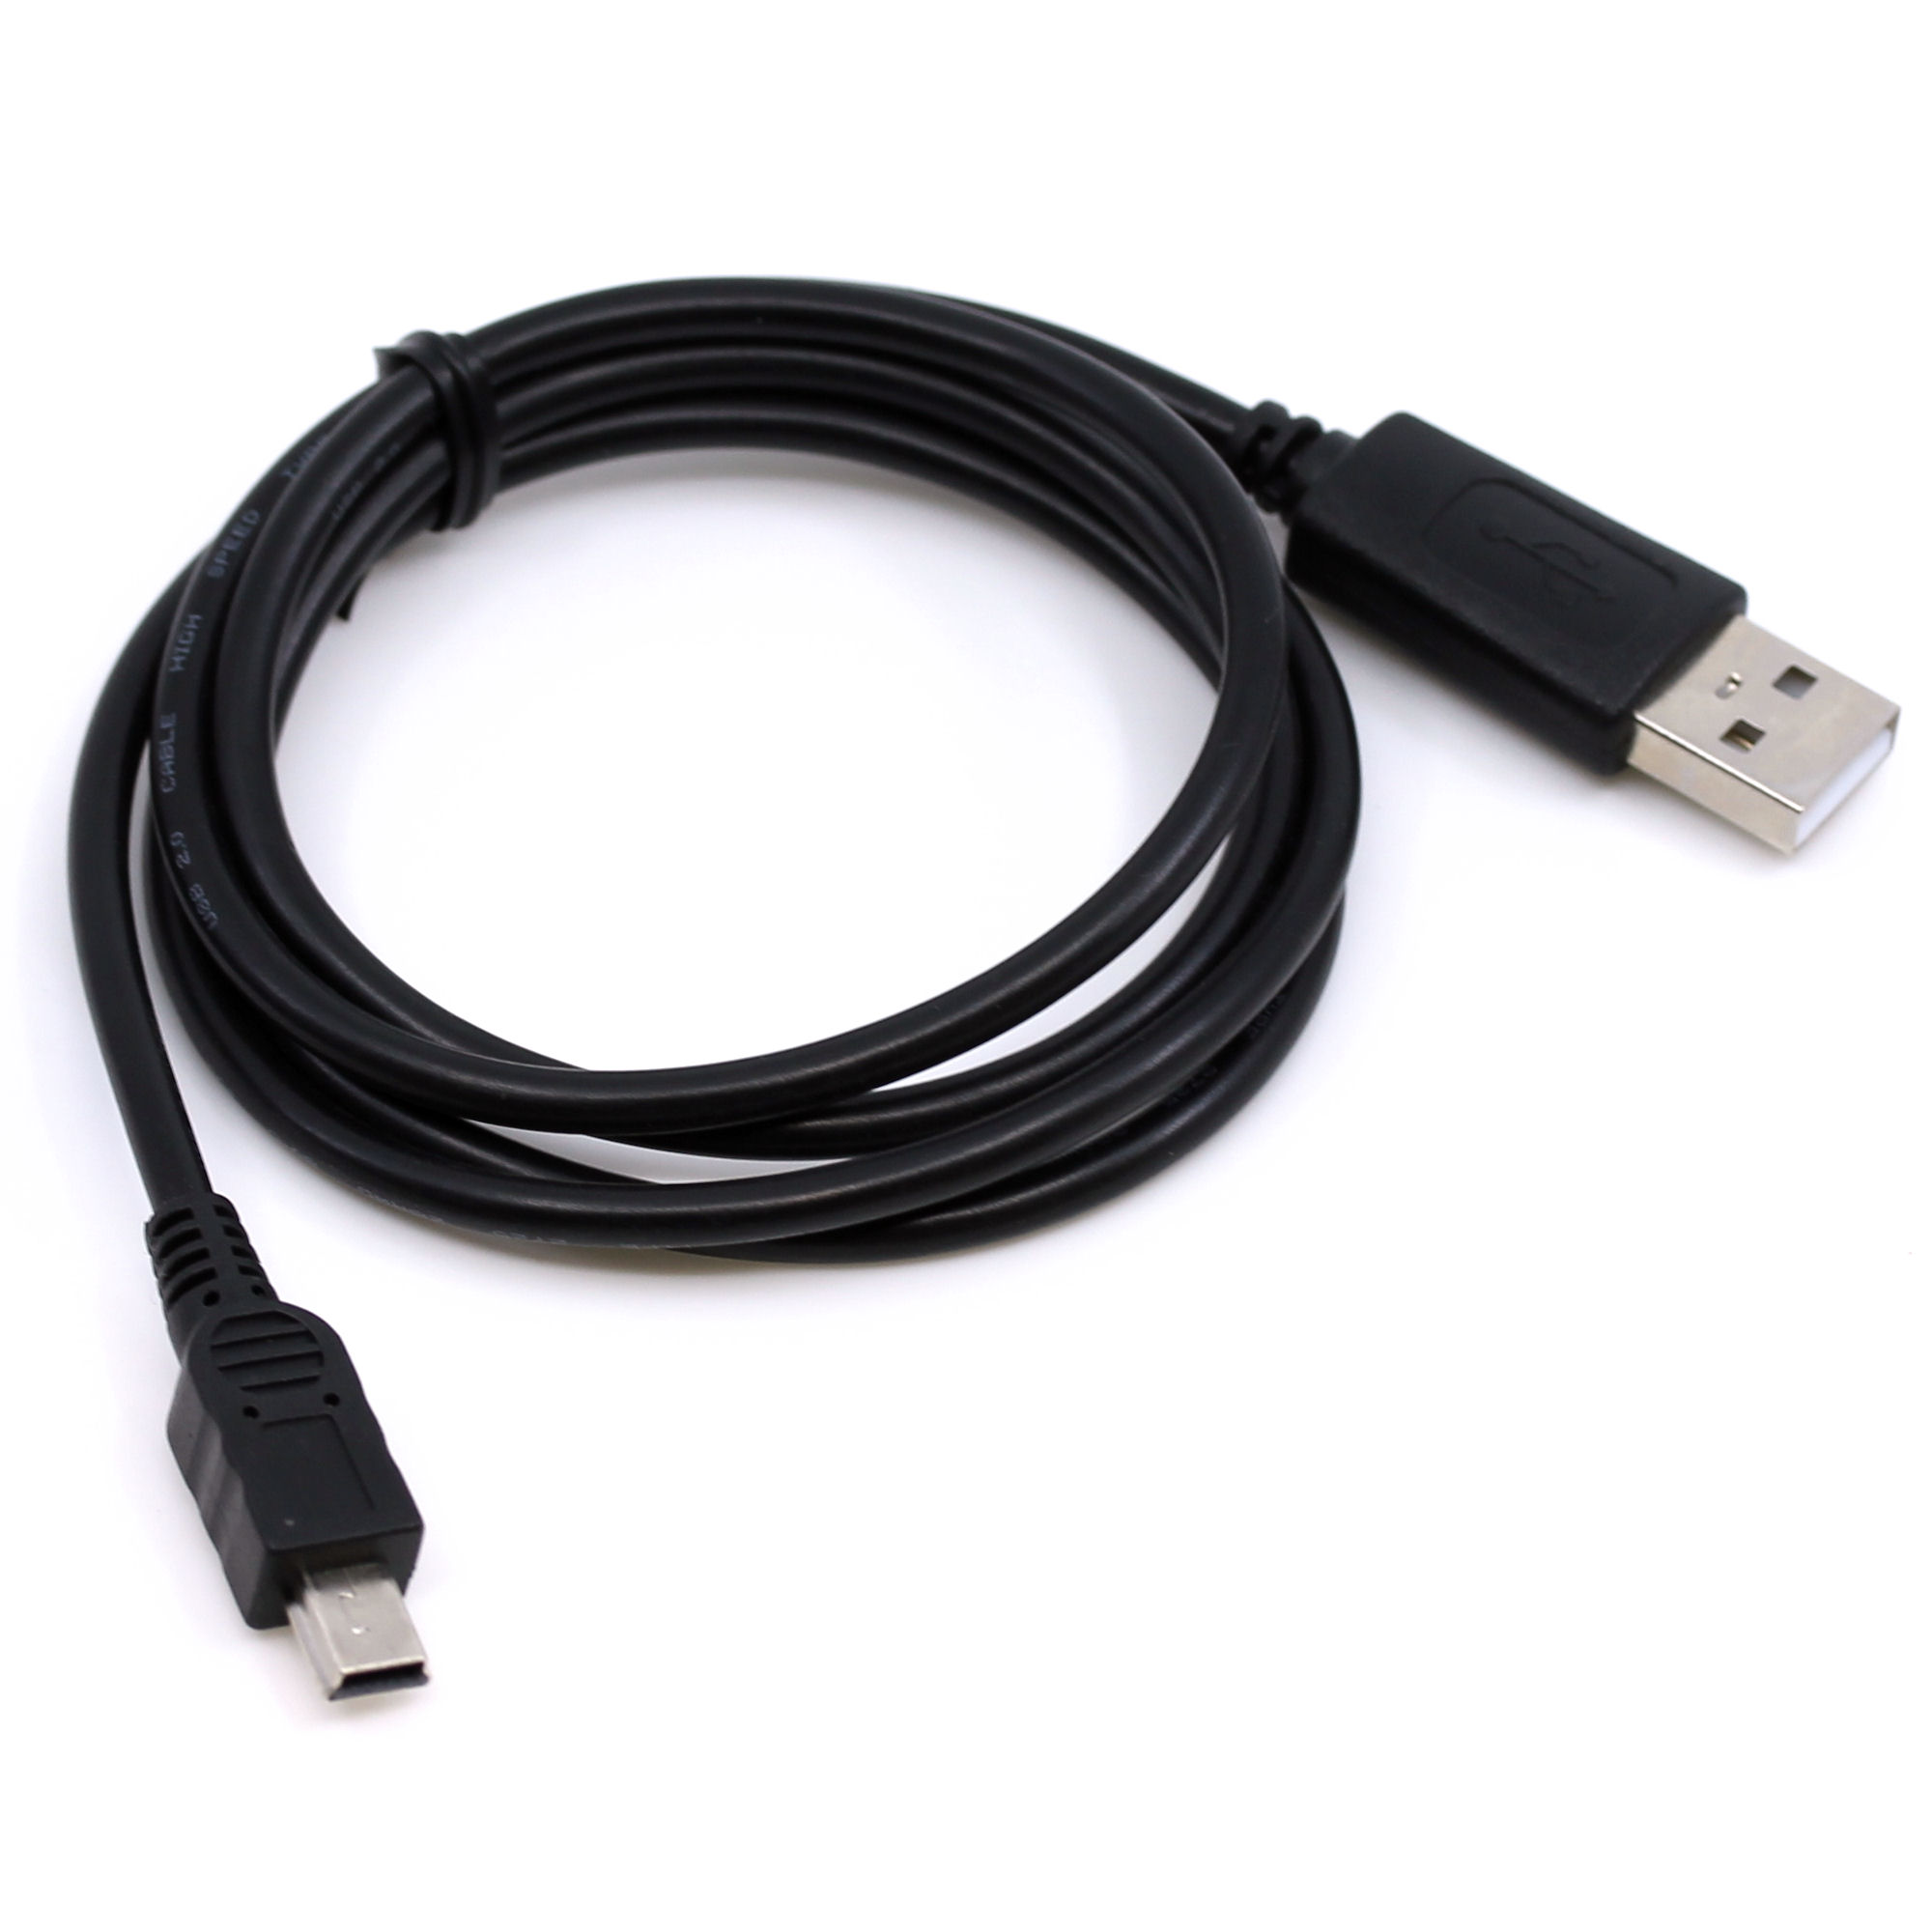 USB Datenkabel für Olympus Camedia 300 Stylus, 400 Stylus, C0 Zoom, C150, C2, C220, C300, C310, C400